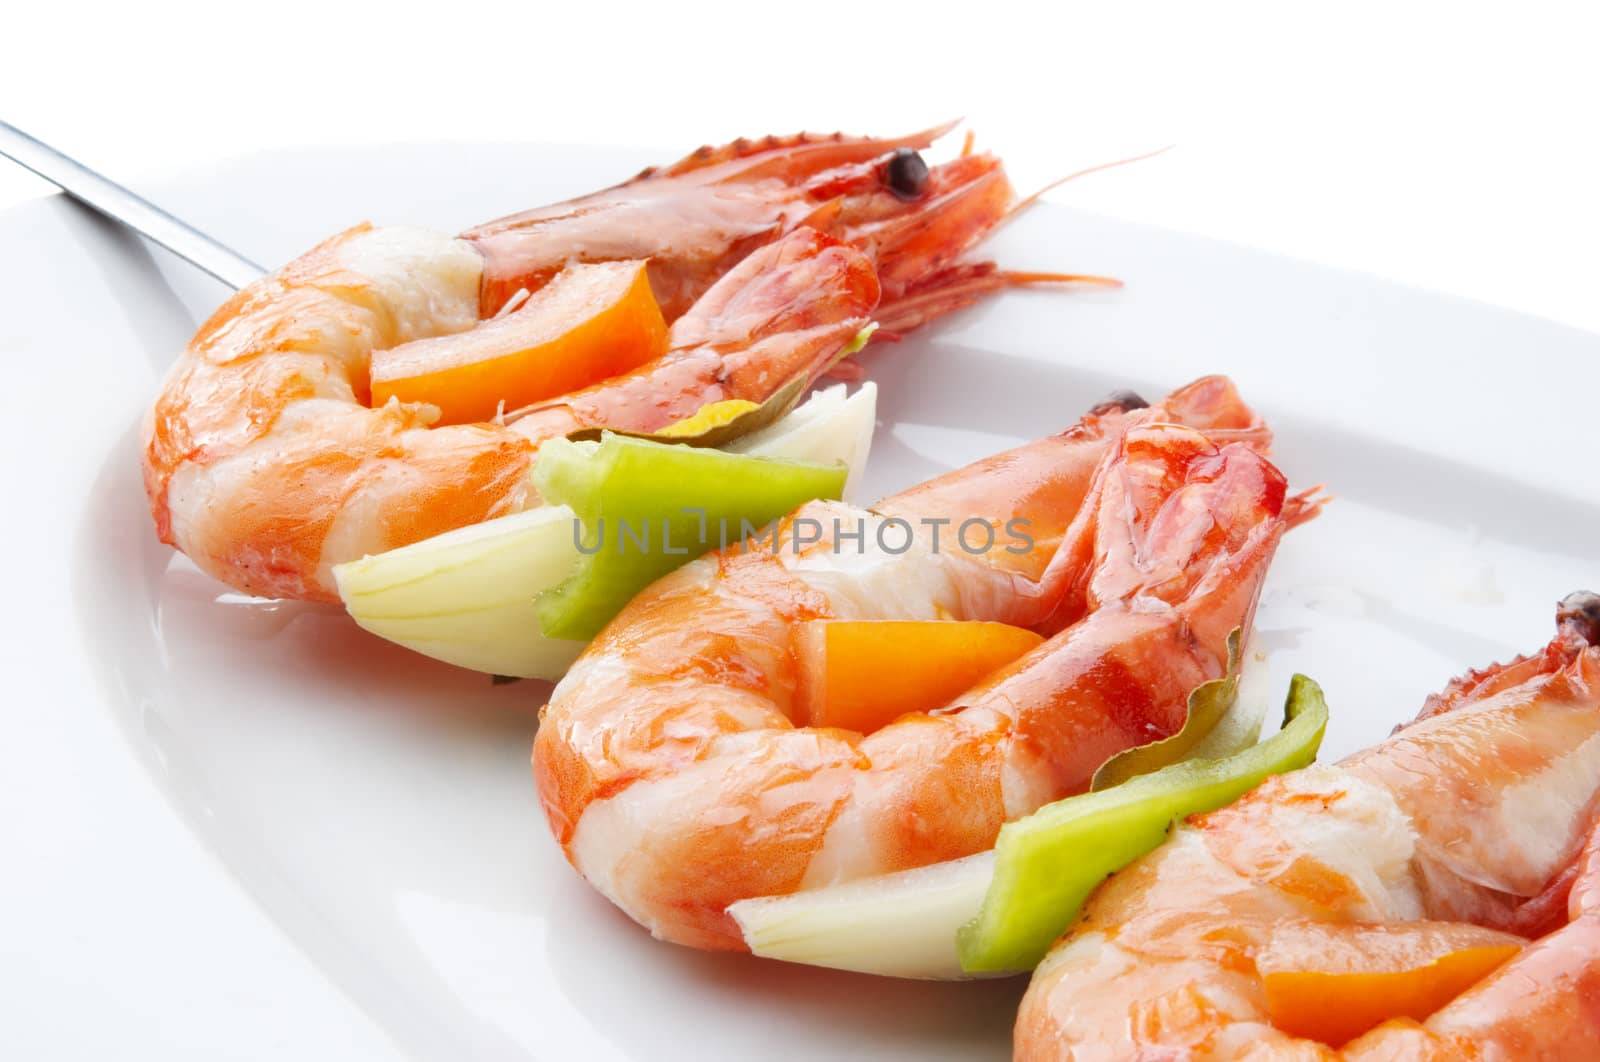 large juicy boiled shrimps served on skewer on plate